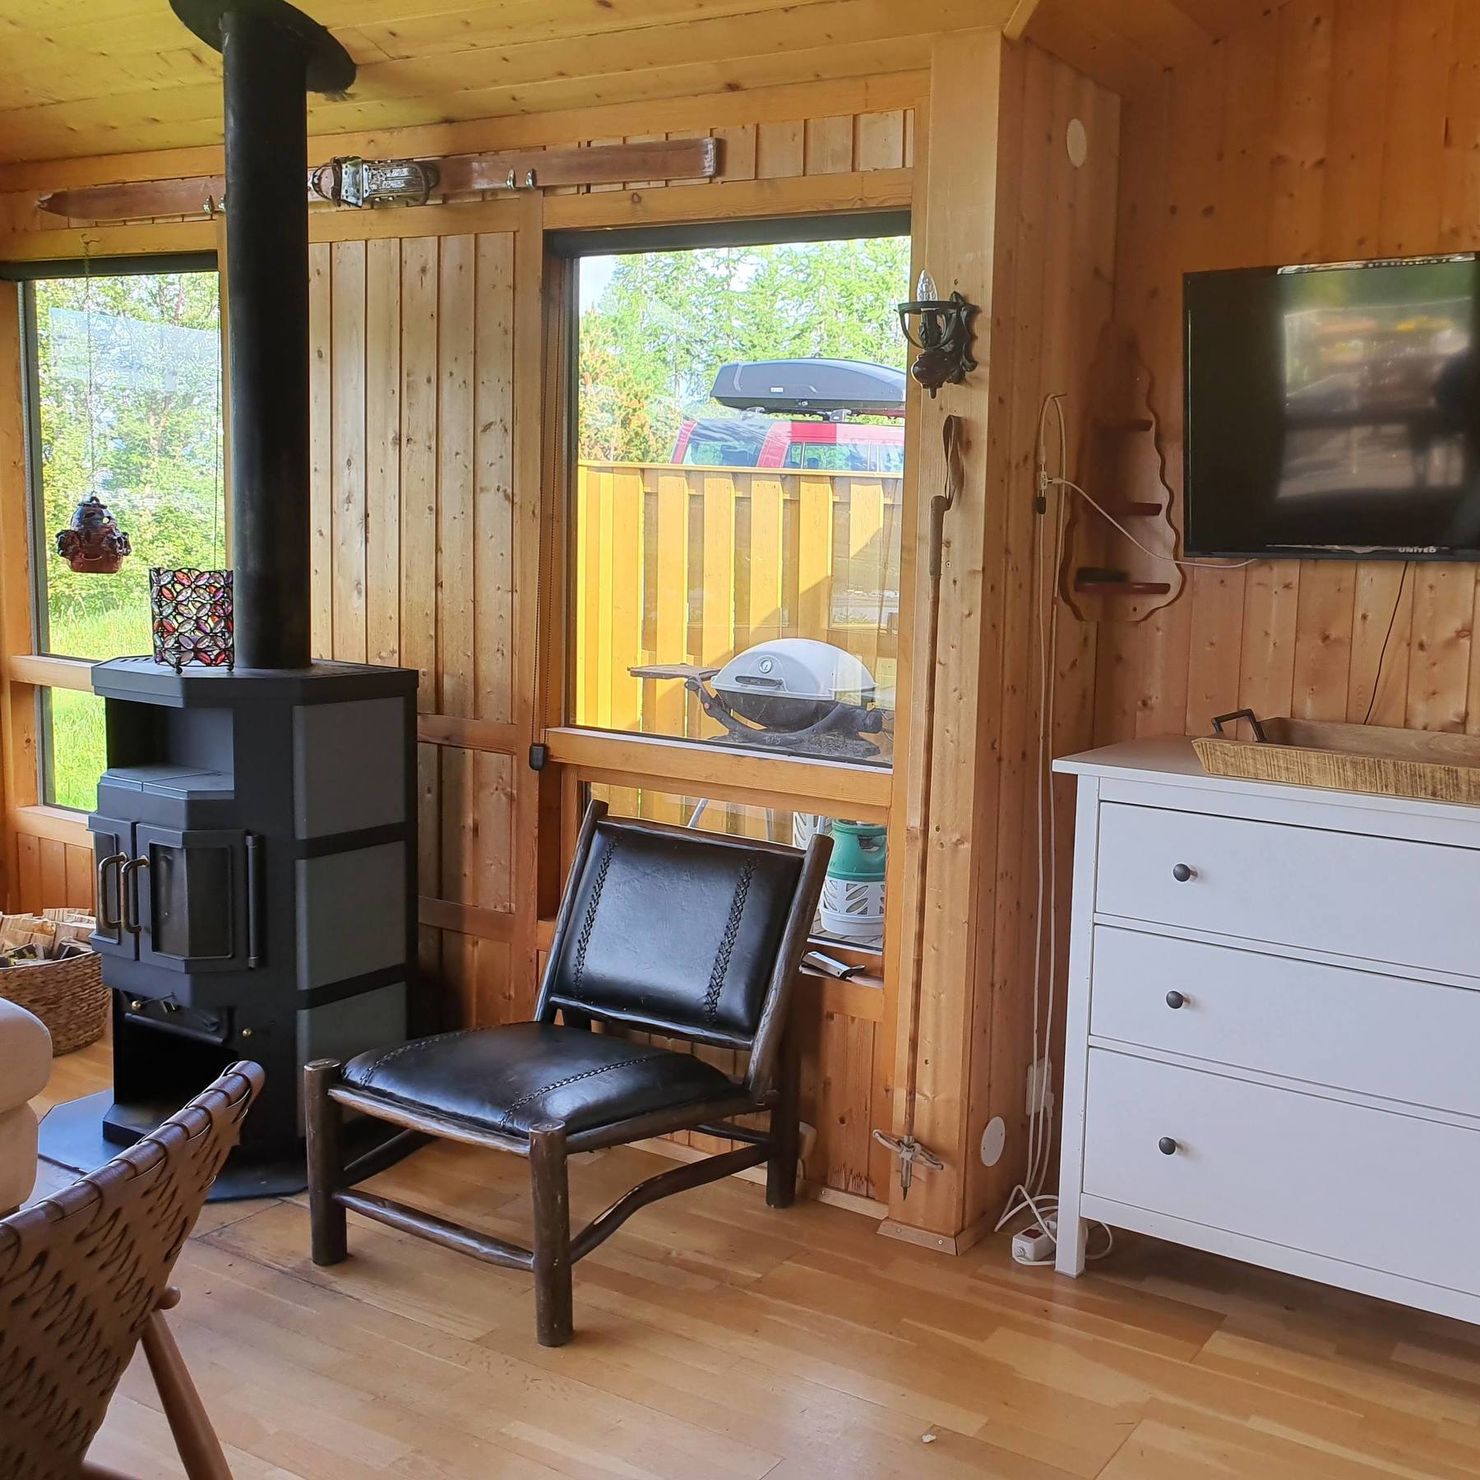 Zum gemütlich machen: Holzofen und Flatscreen TV im Wohnzimmer